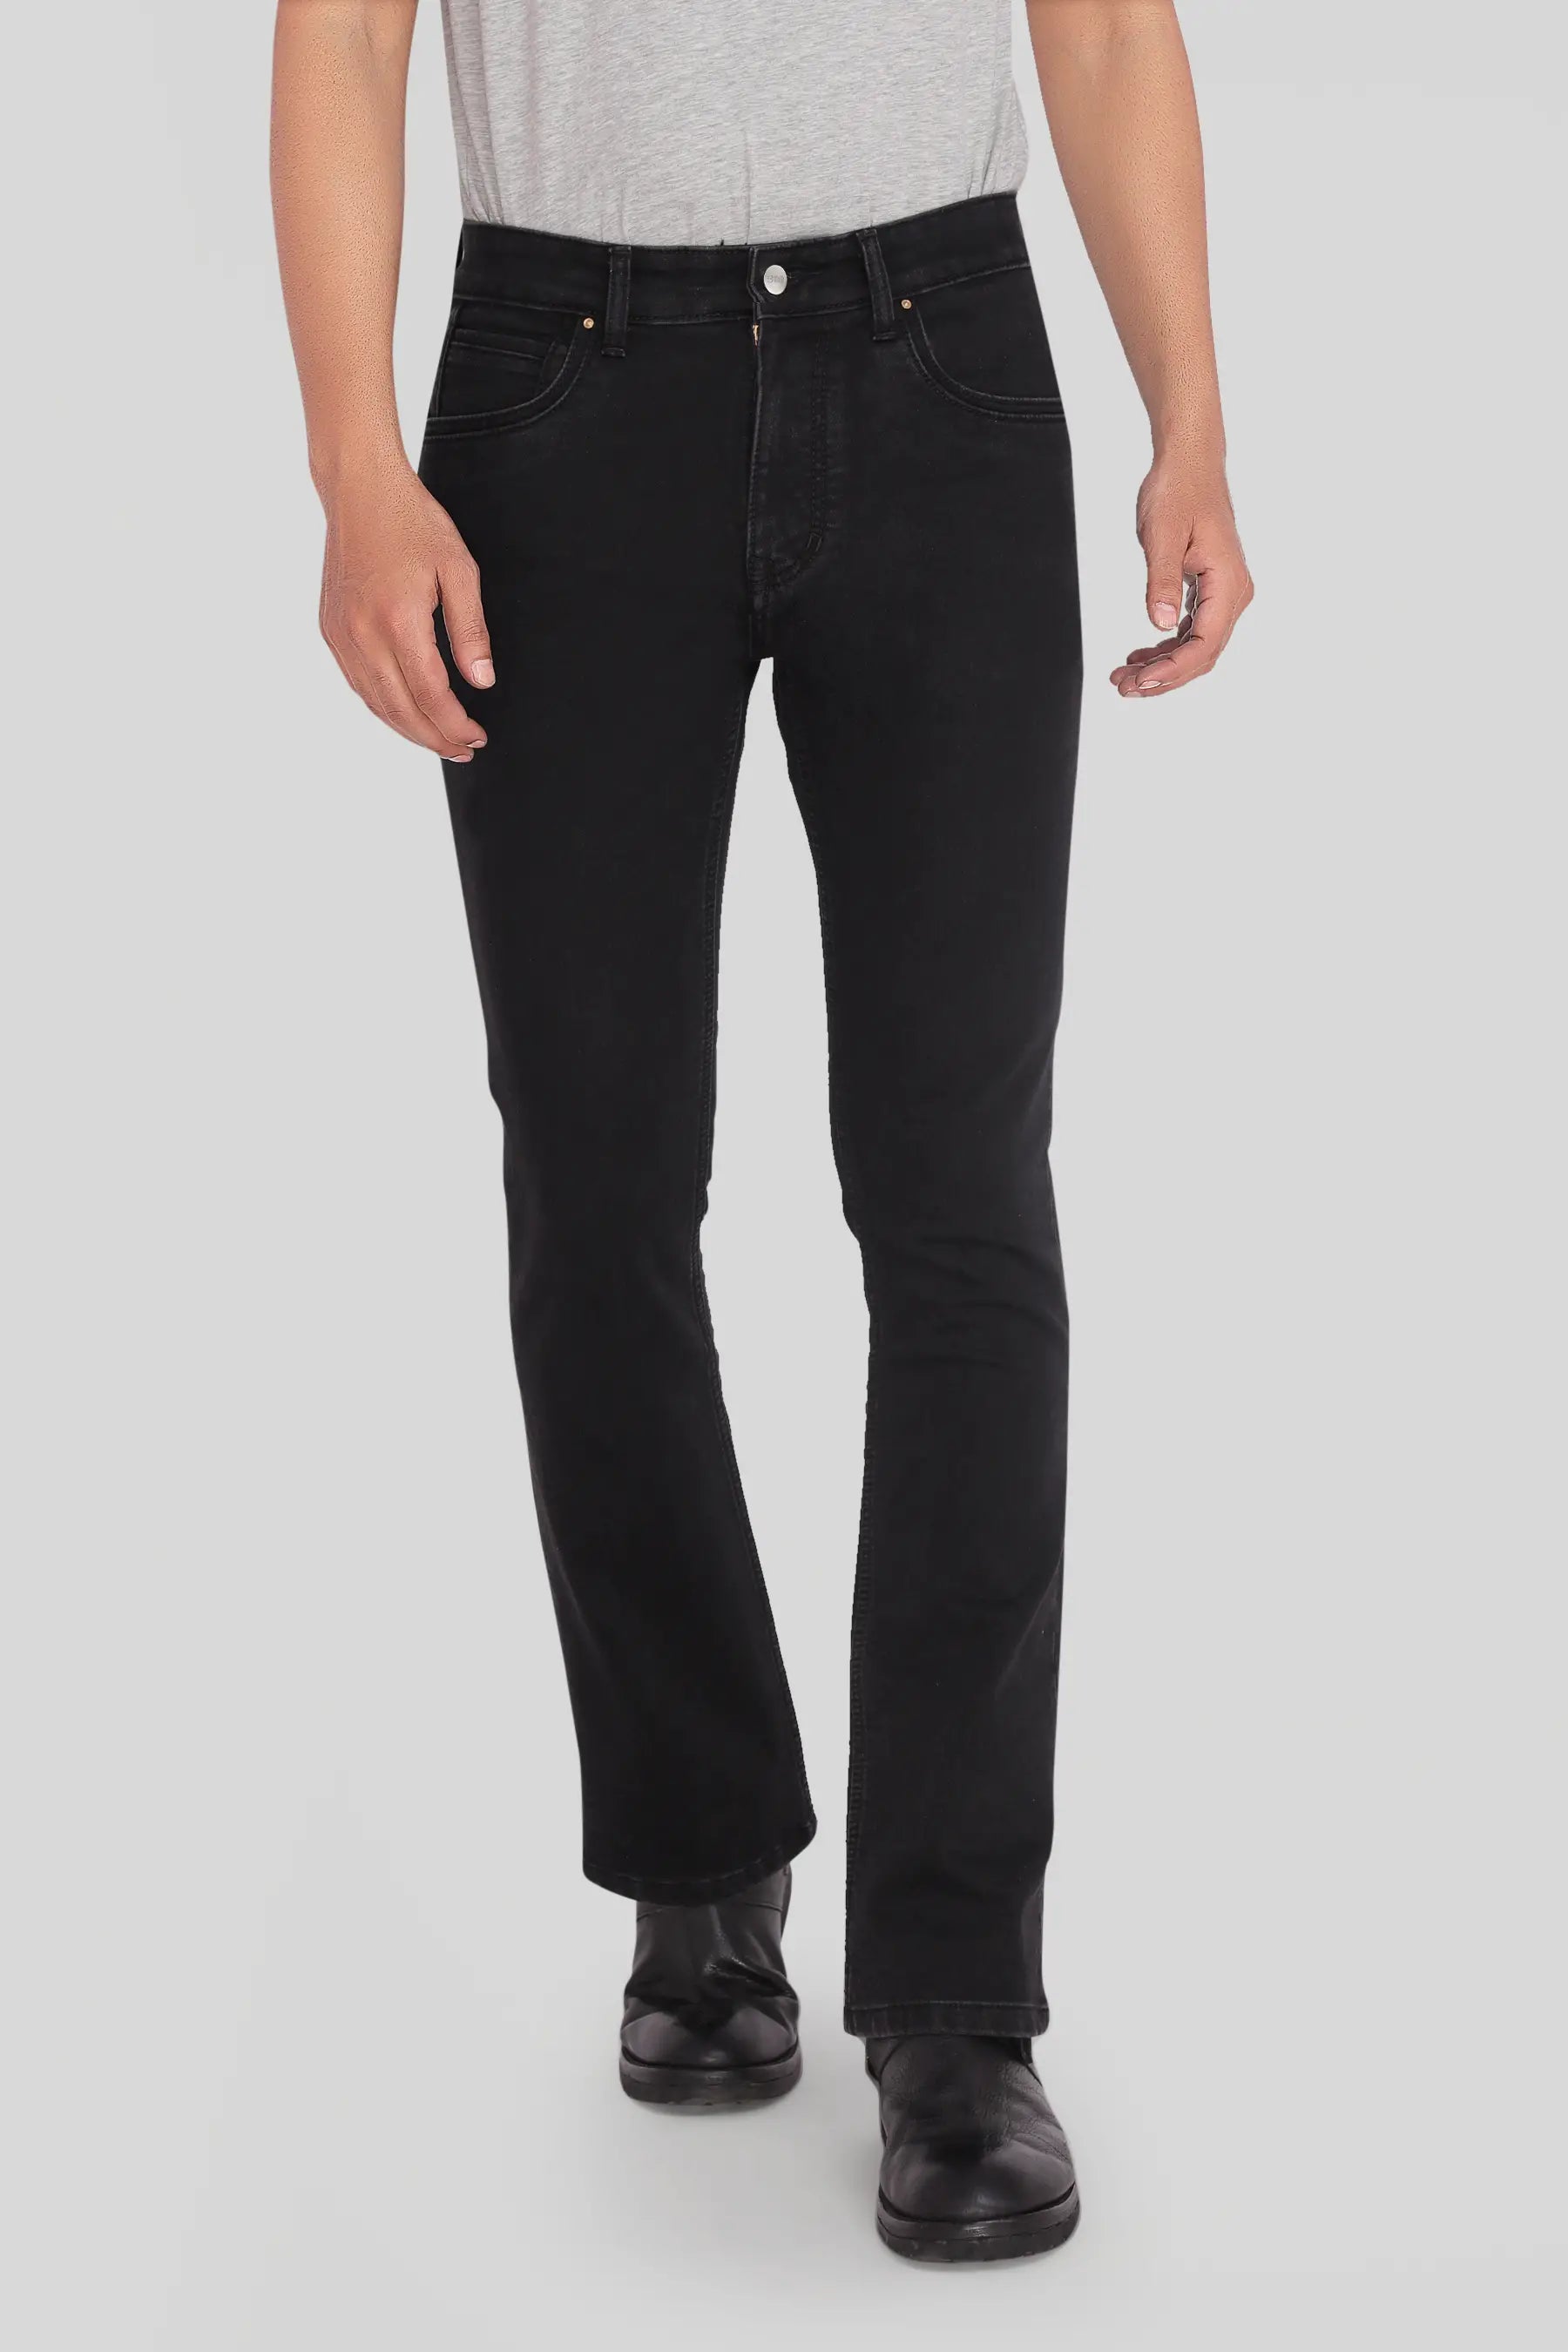 Aggregate 194+ carbon black colour jeans